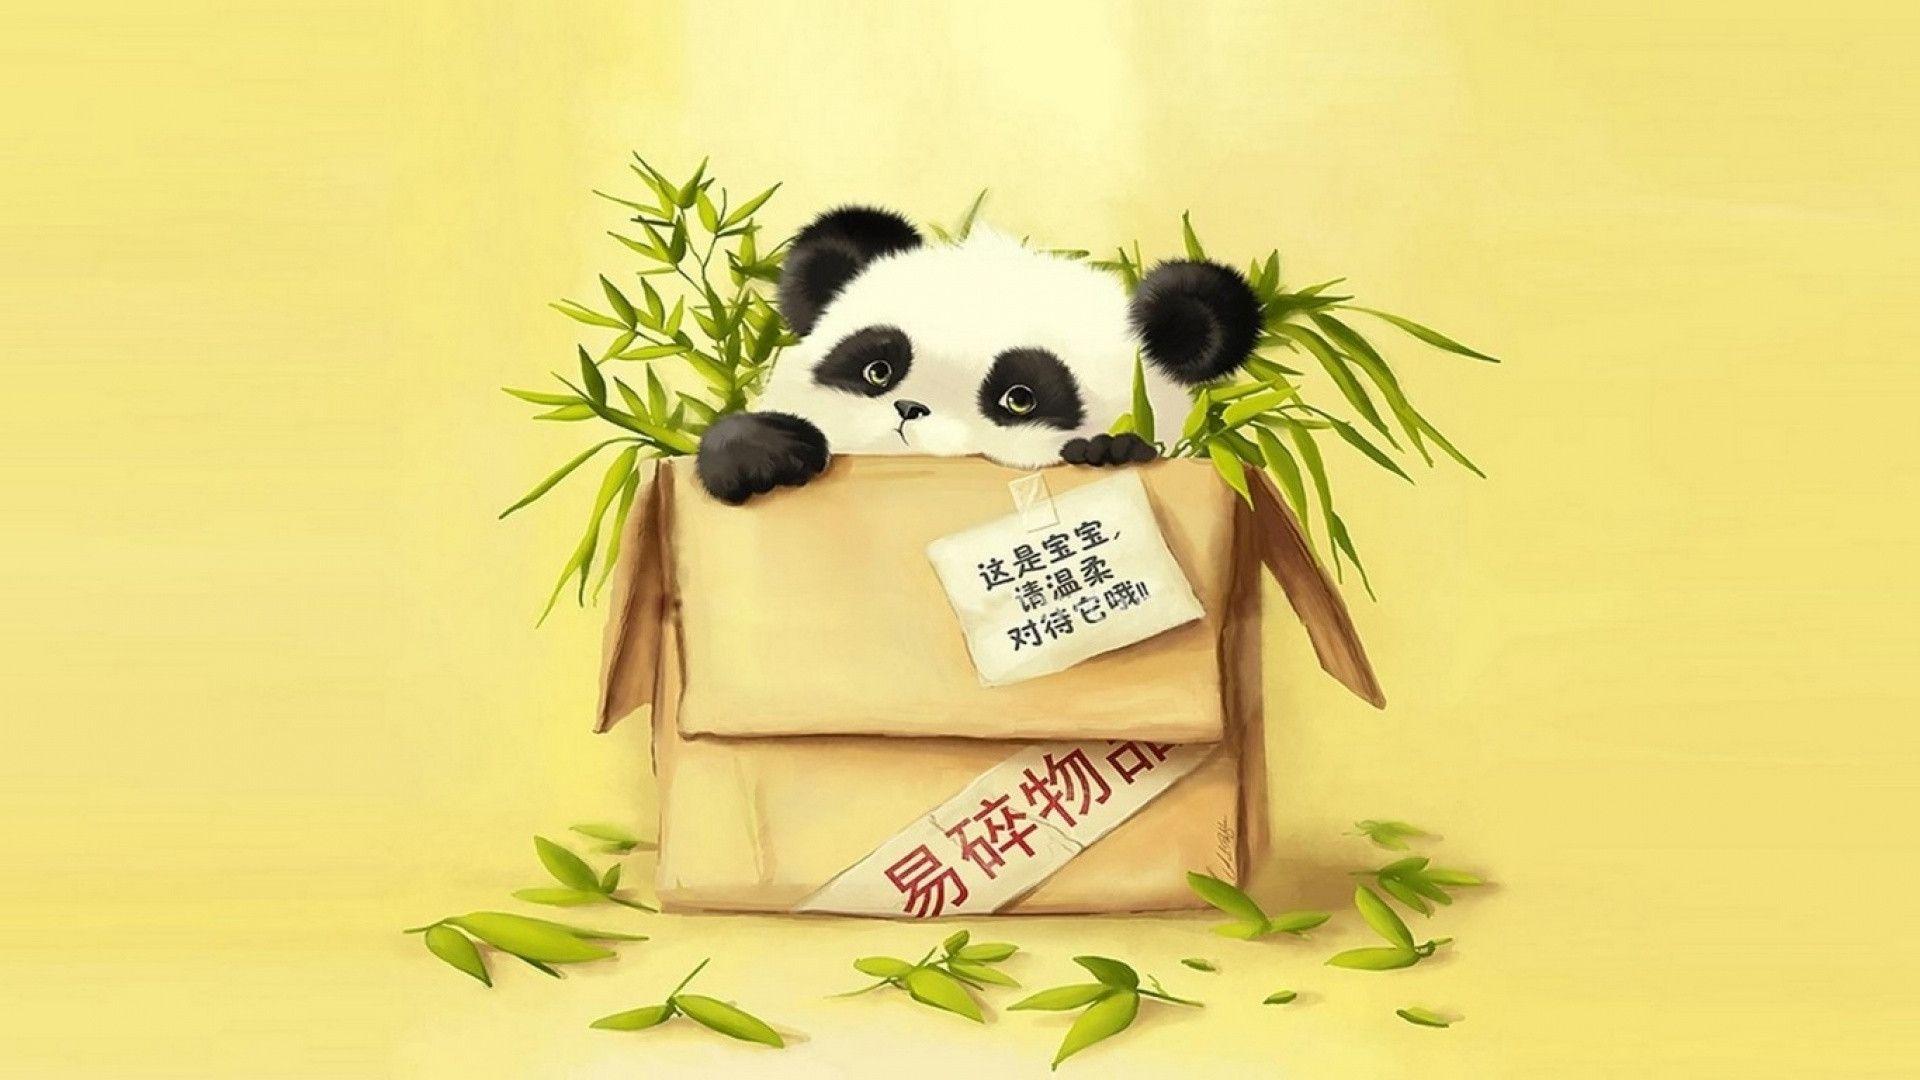 Cute baby panda wallpaper